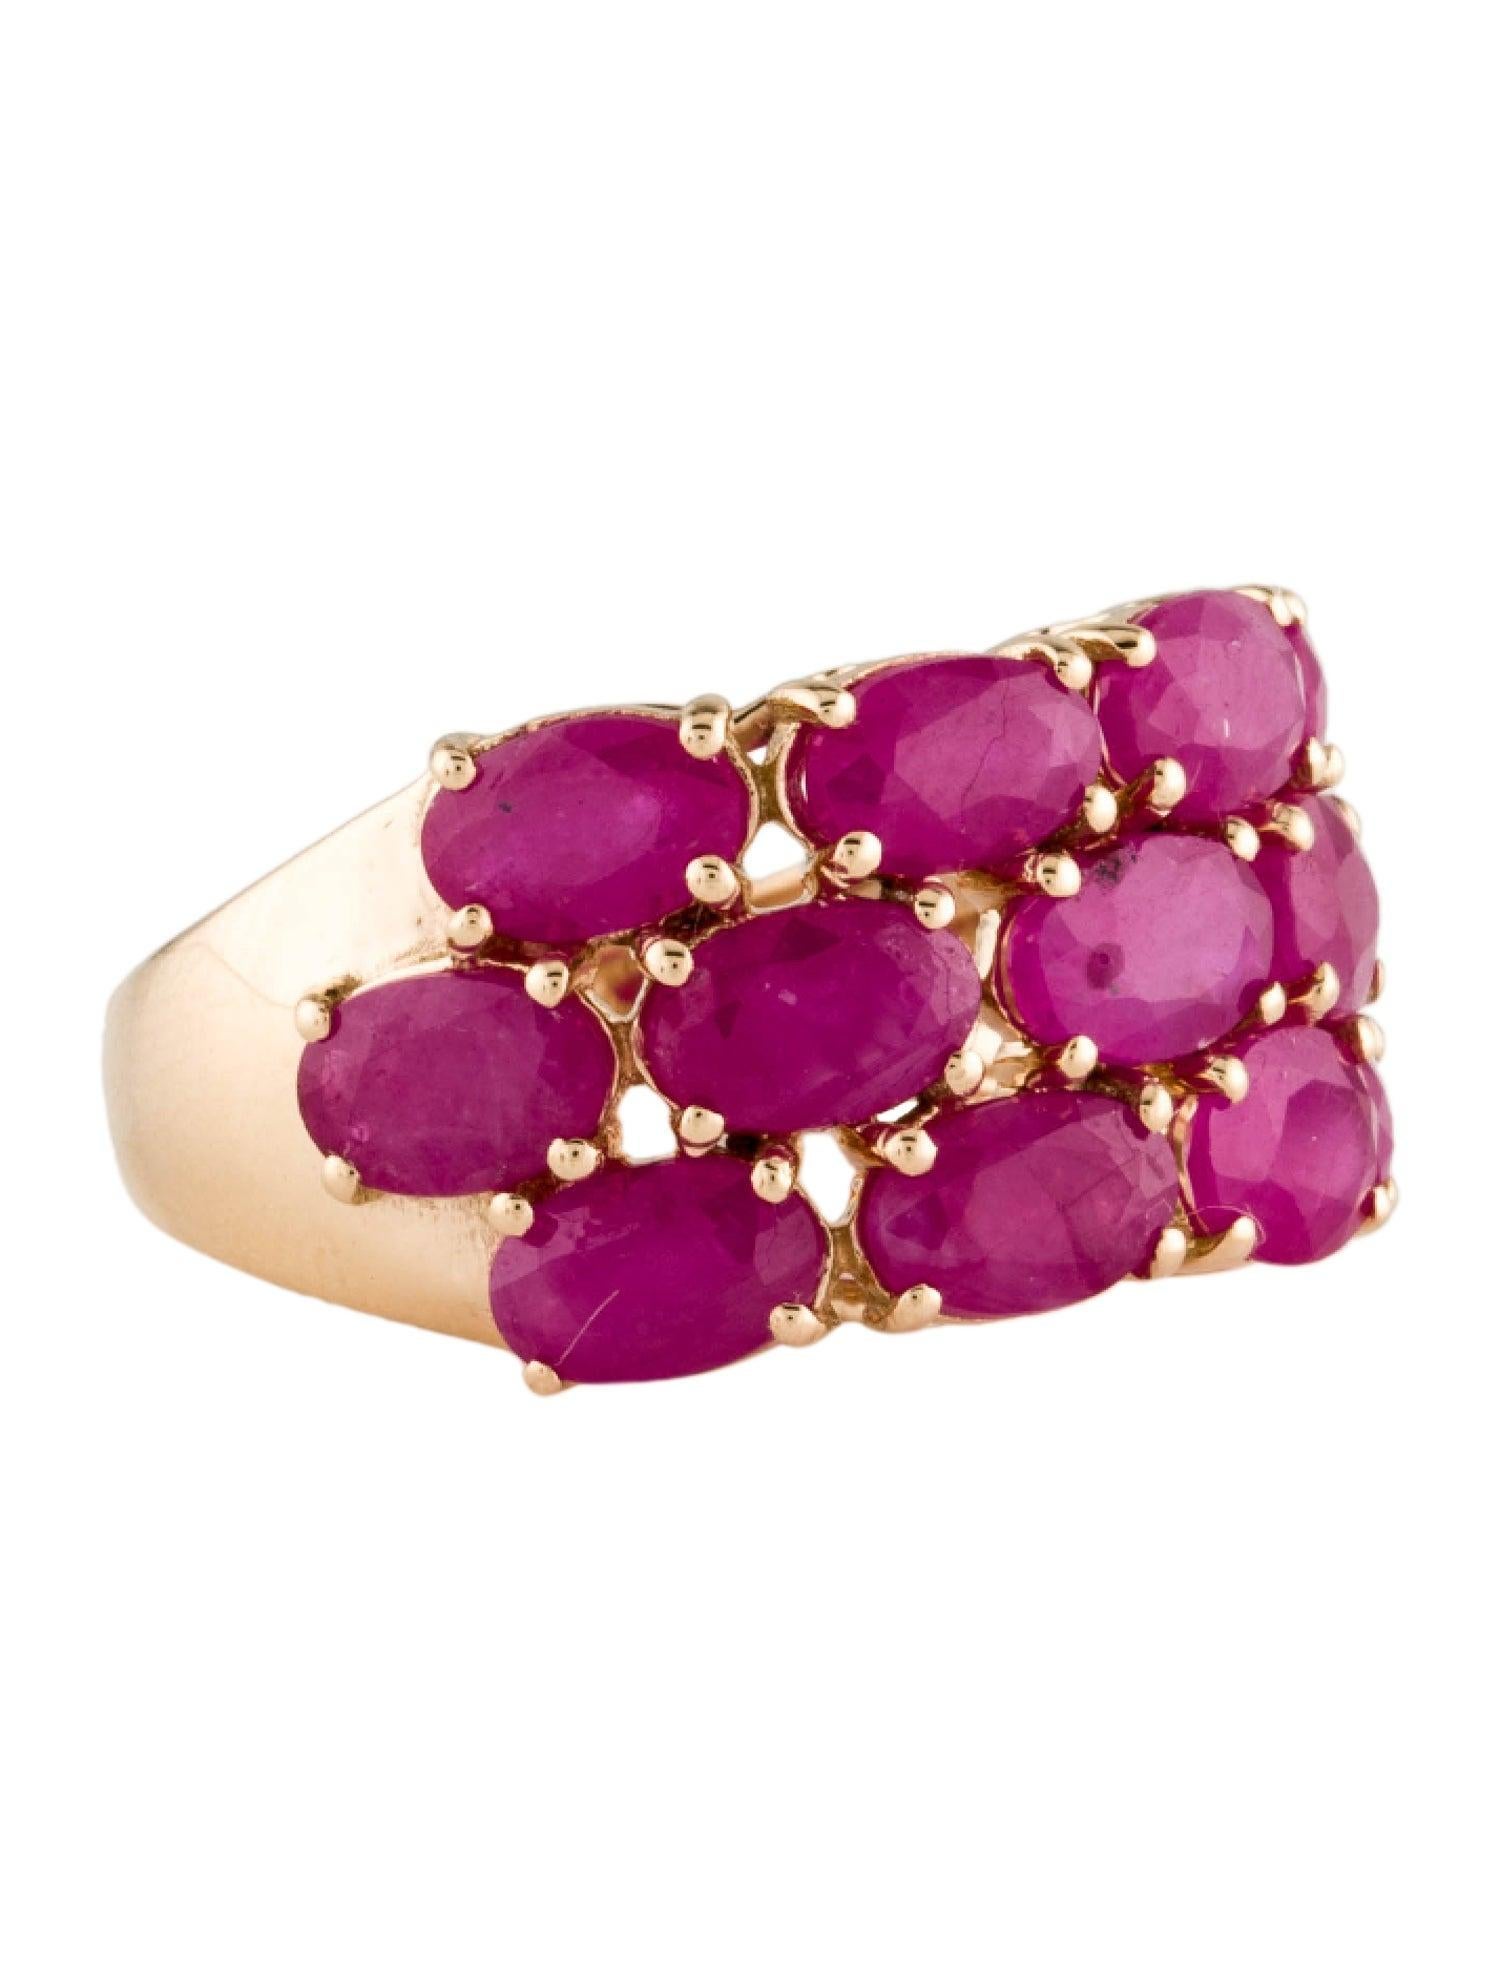 Erhöhen Sie Ihren Stil mit dem exquisiten Charme unseres Blooms of Passion Ruby Elegance Rings von Jeweltique. Dieses strahlende Schmuckstück ist nicht einfach nur ein Ring, es ist eine Manifestation leidenschaftlicher Blüten und der zeitlosen